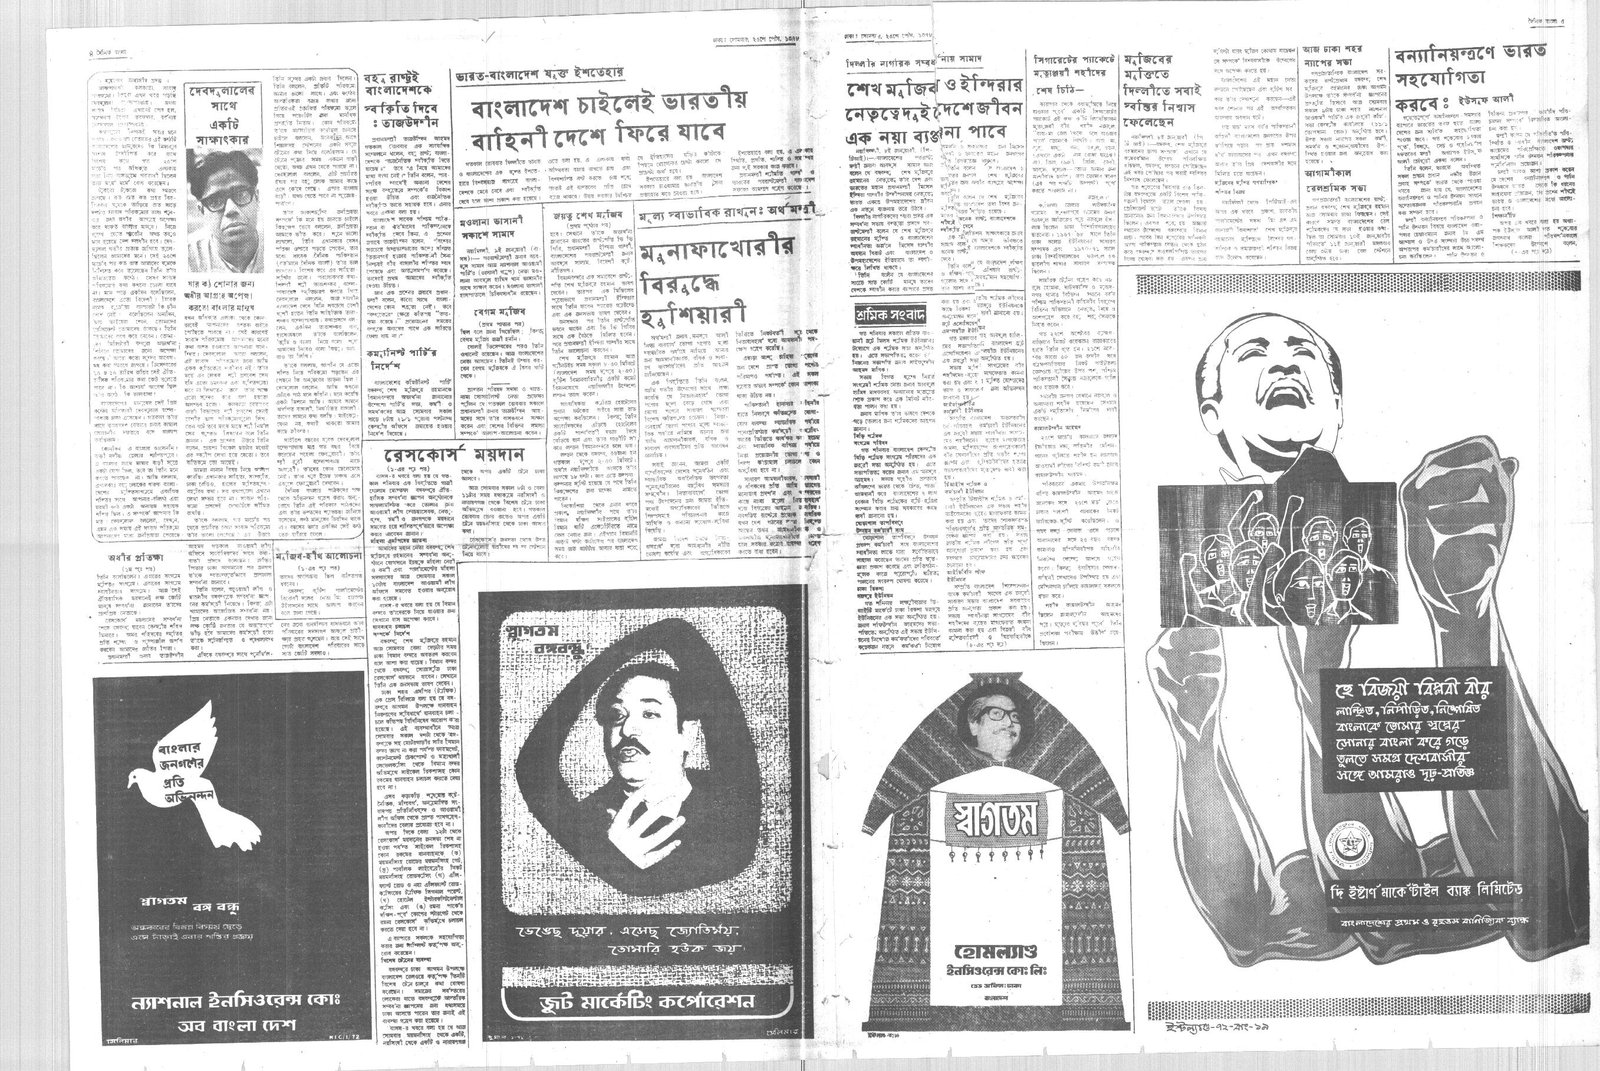 11JAN1972-DAINIK BANGLA-Regular-Page 4 and 5